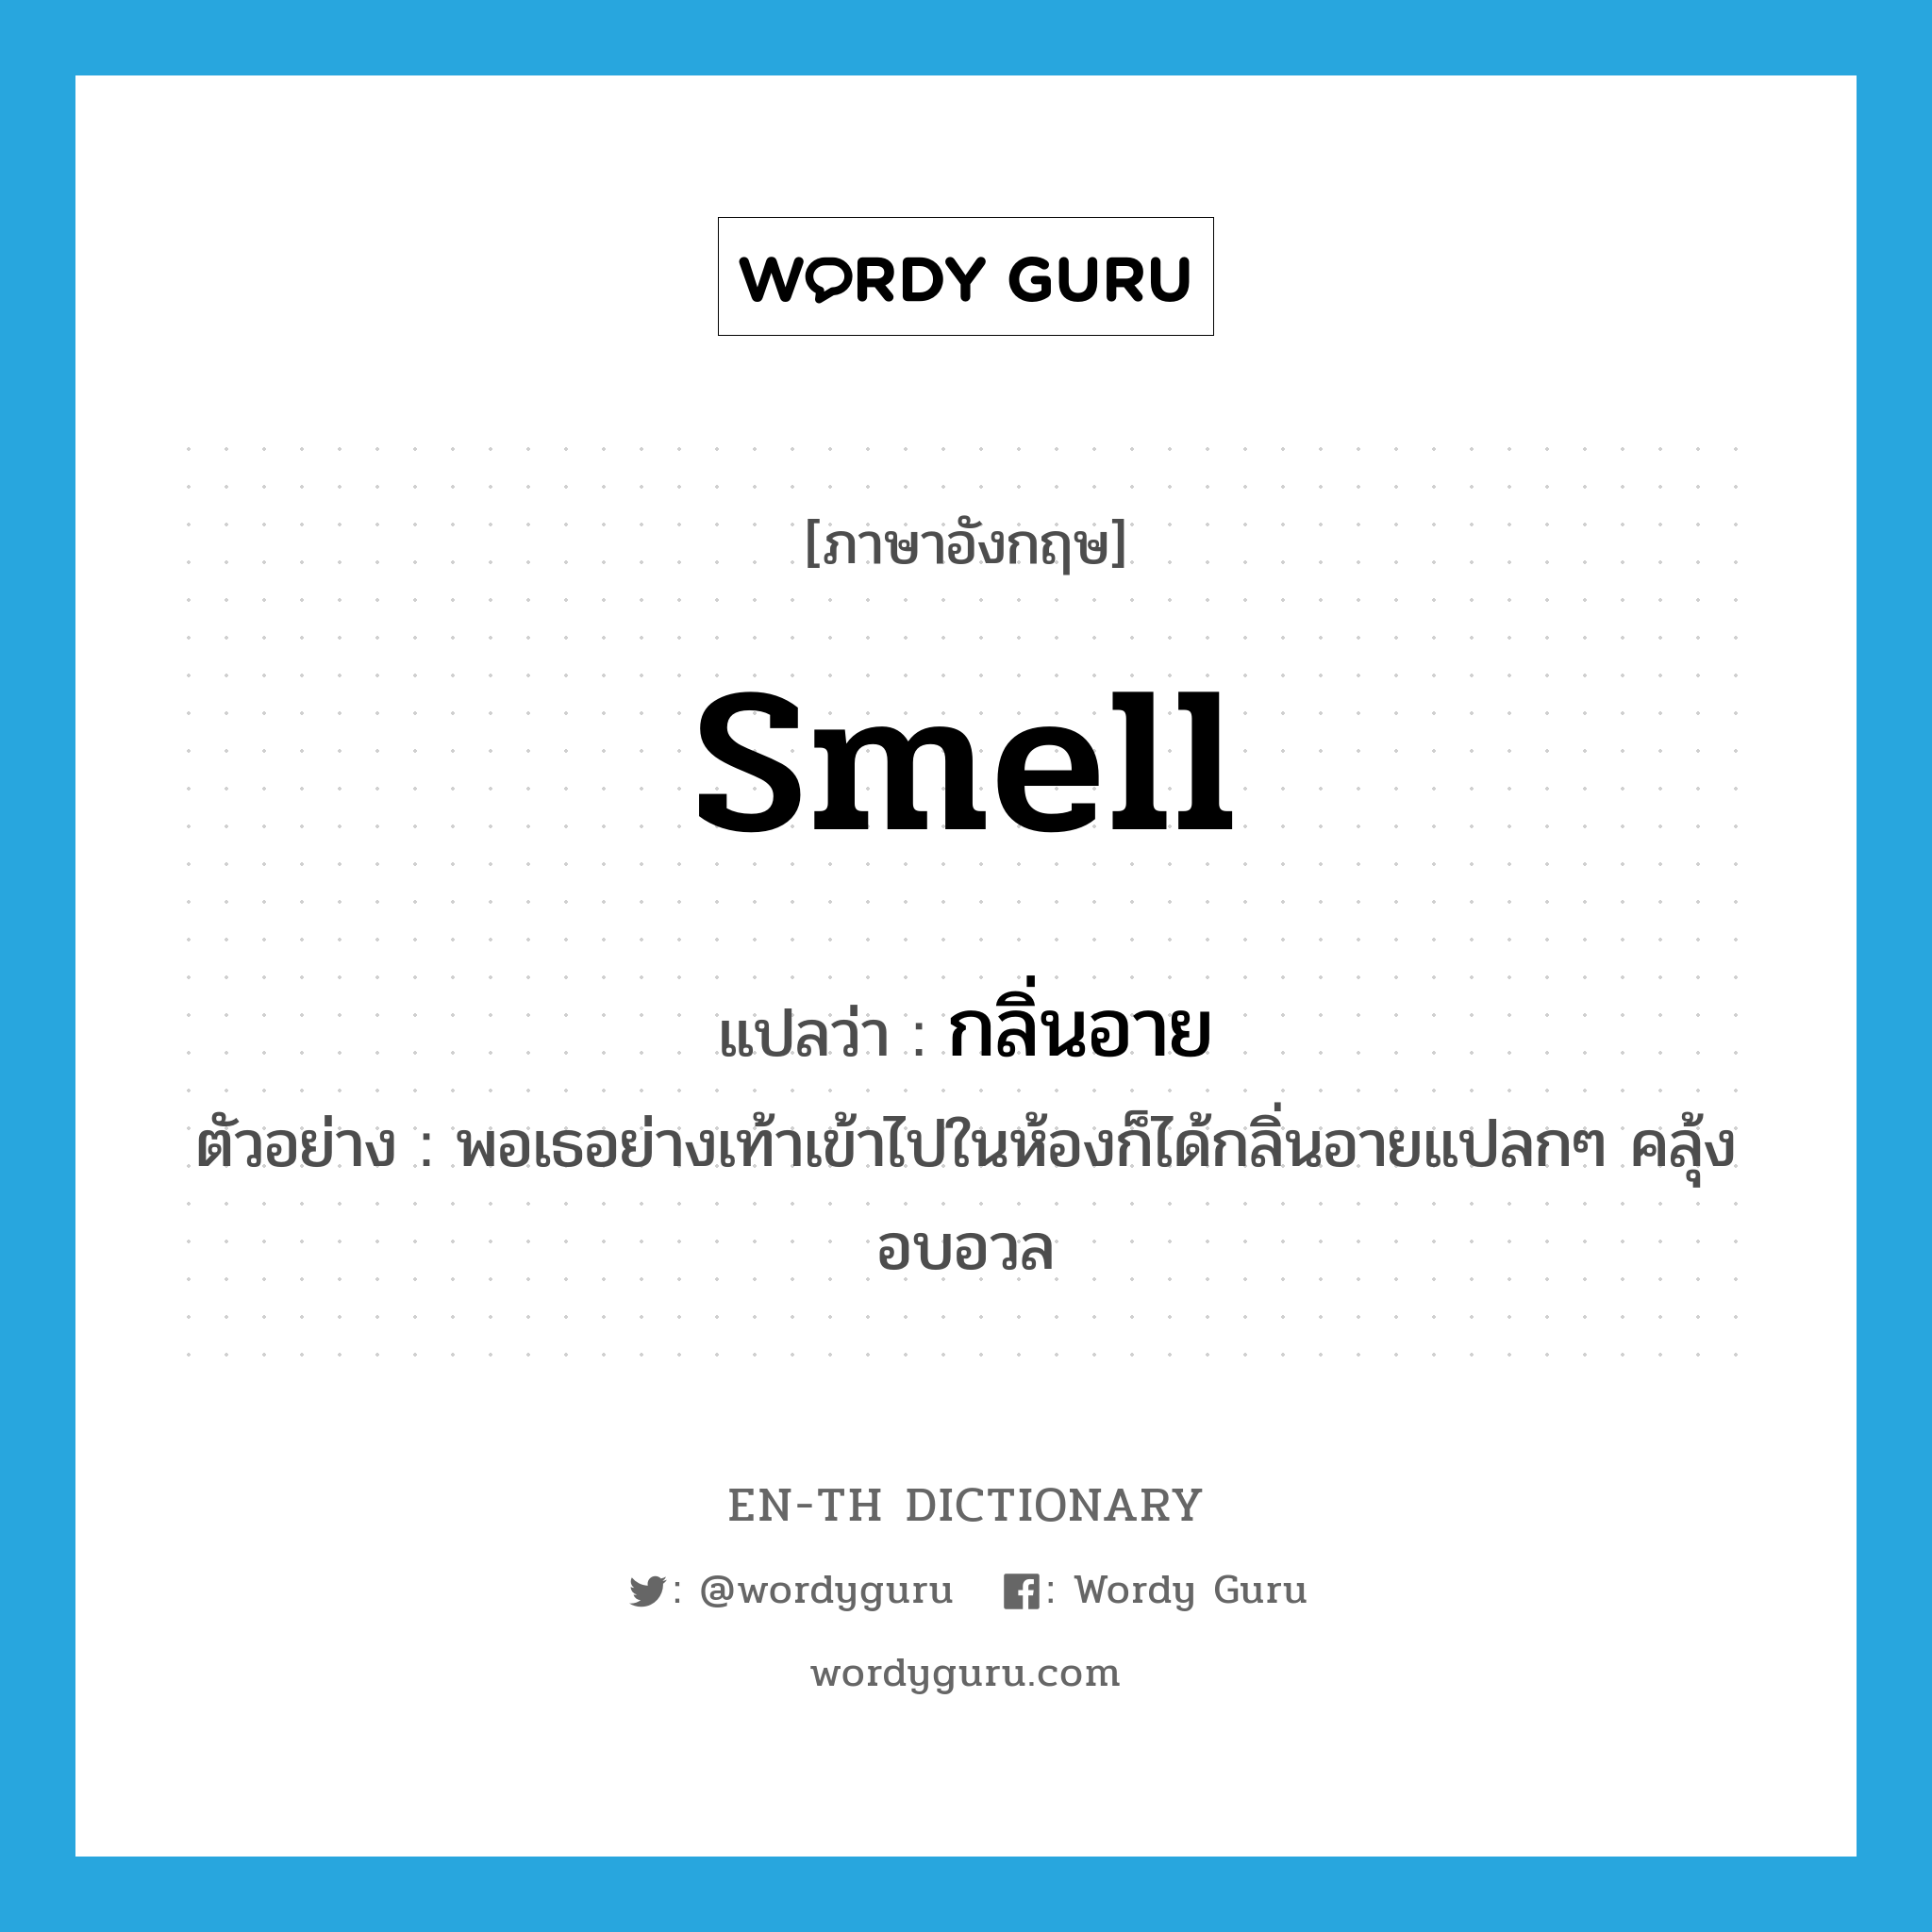 smell แปลว่า?, คำศัพท์ภาษาอังกฤษ smell แปลว่า กลิ่นอาย ประเภท N ตัวอย่าง พอเธอย่างเท้าเข้าไปในห้องก็ได้กลิ่นอายแปลกๆ คลุ้งอบอวล หมวด N